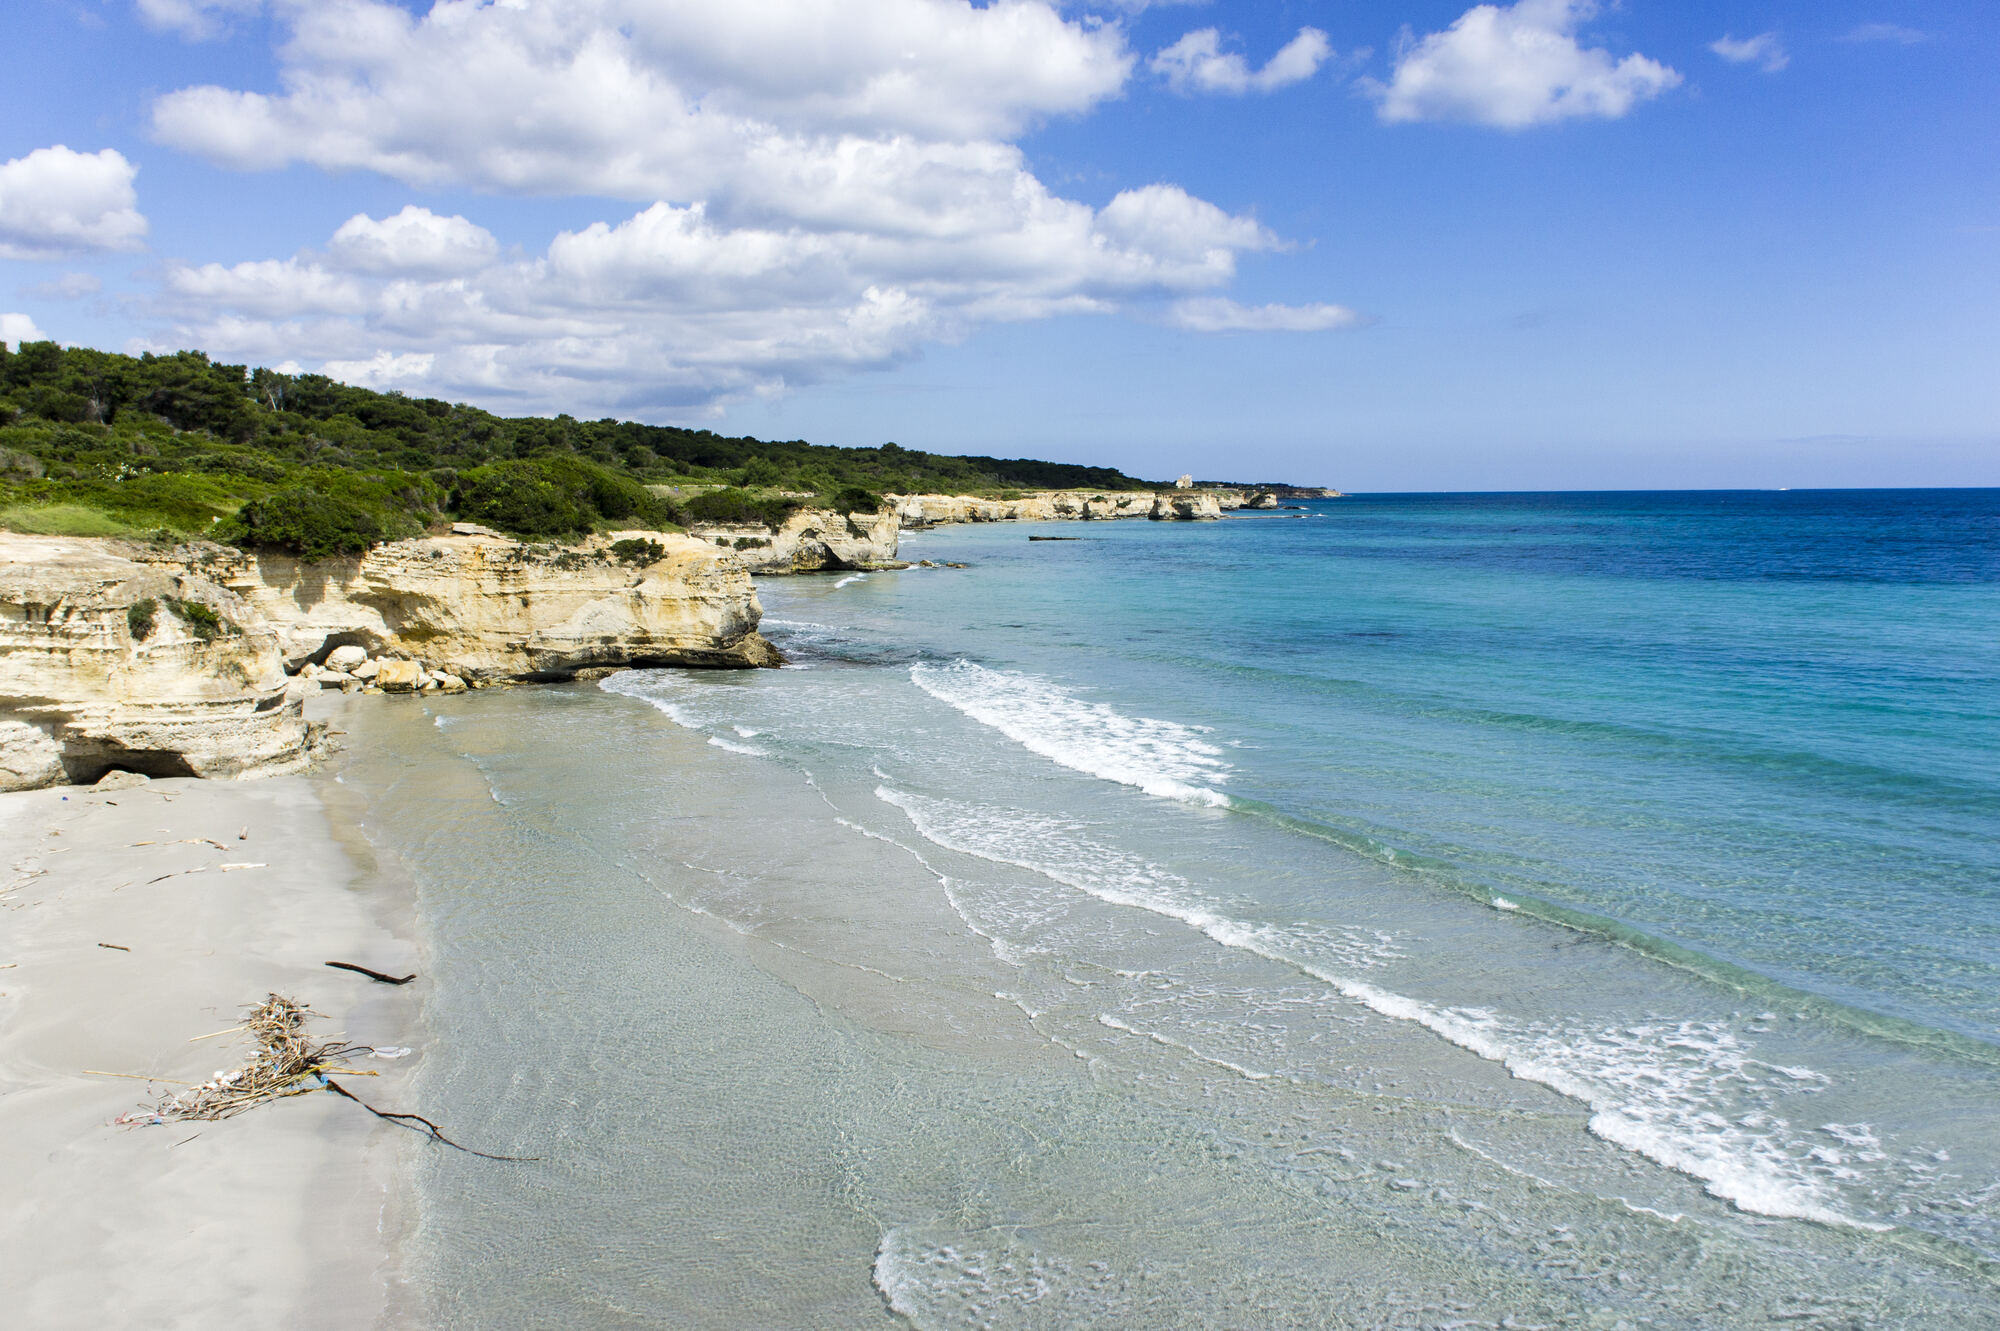 La spiaggia di Frassanito, a Otranto, sul litorale adriatico, è una delle migliori spiagge del Salento, con Bandiera Blu e 5 Vele Legambiente. Circondata da dune e macchia mediterranea, offre un fondale misto ideale per la pesca. Dotata di lidi attrezzati e aree libere, è perfetta per praticare sport acquatici come surf e windsurf. Vicino ci sono campeggi e agriturismi.